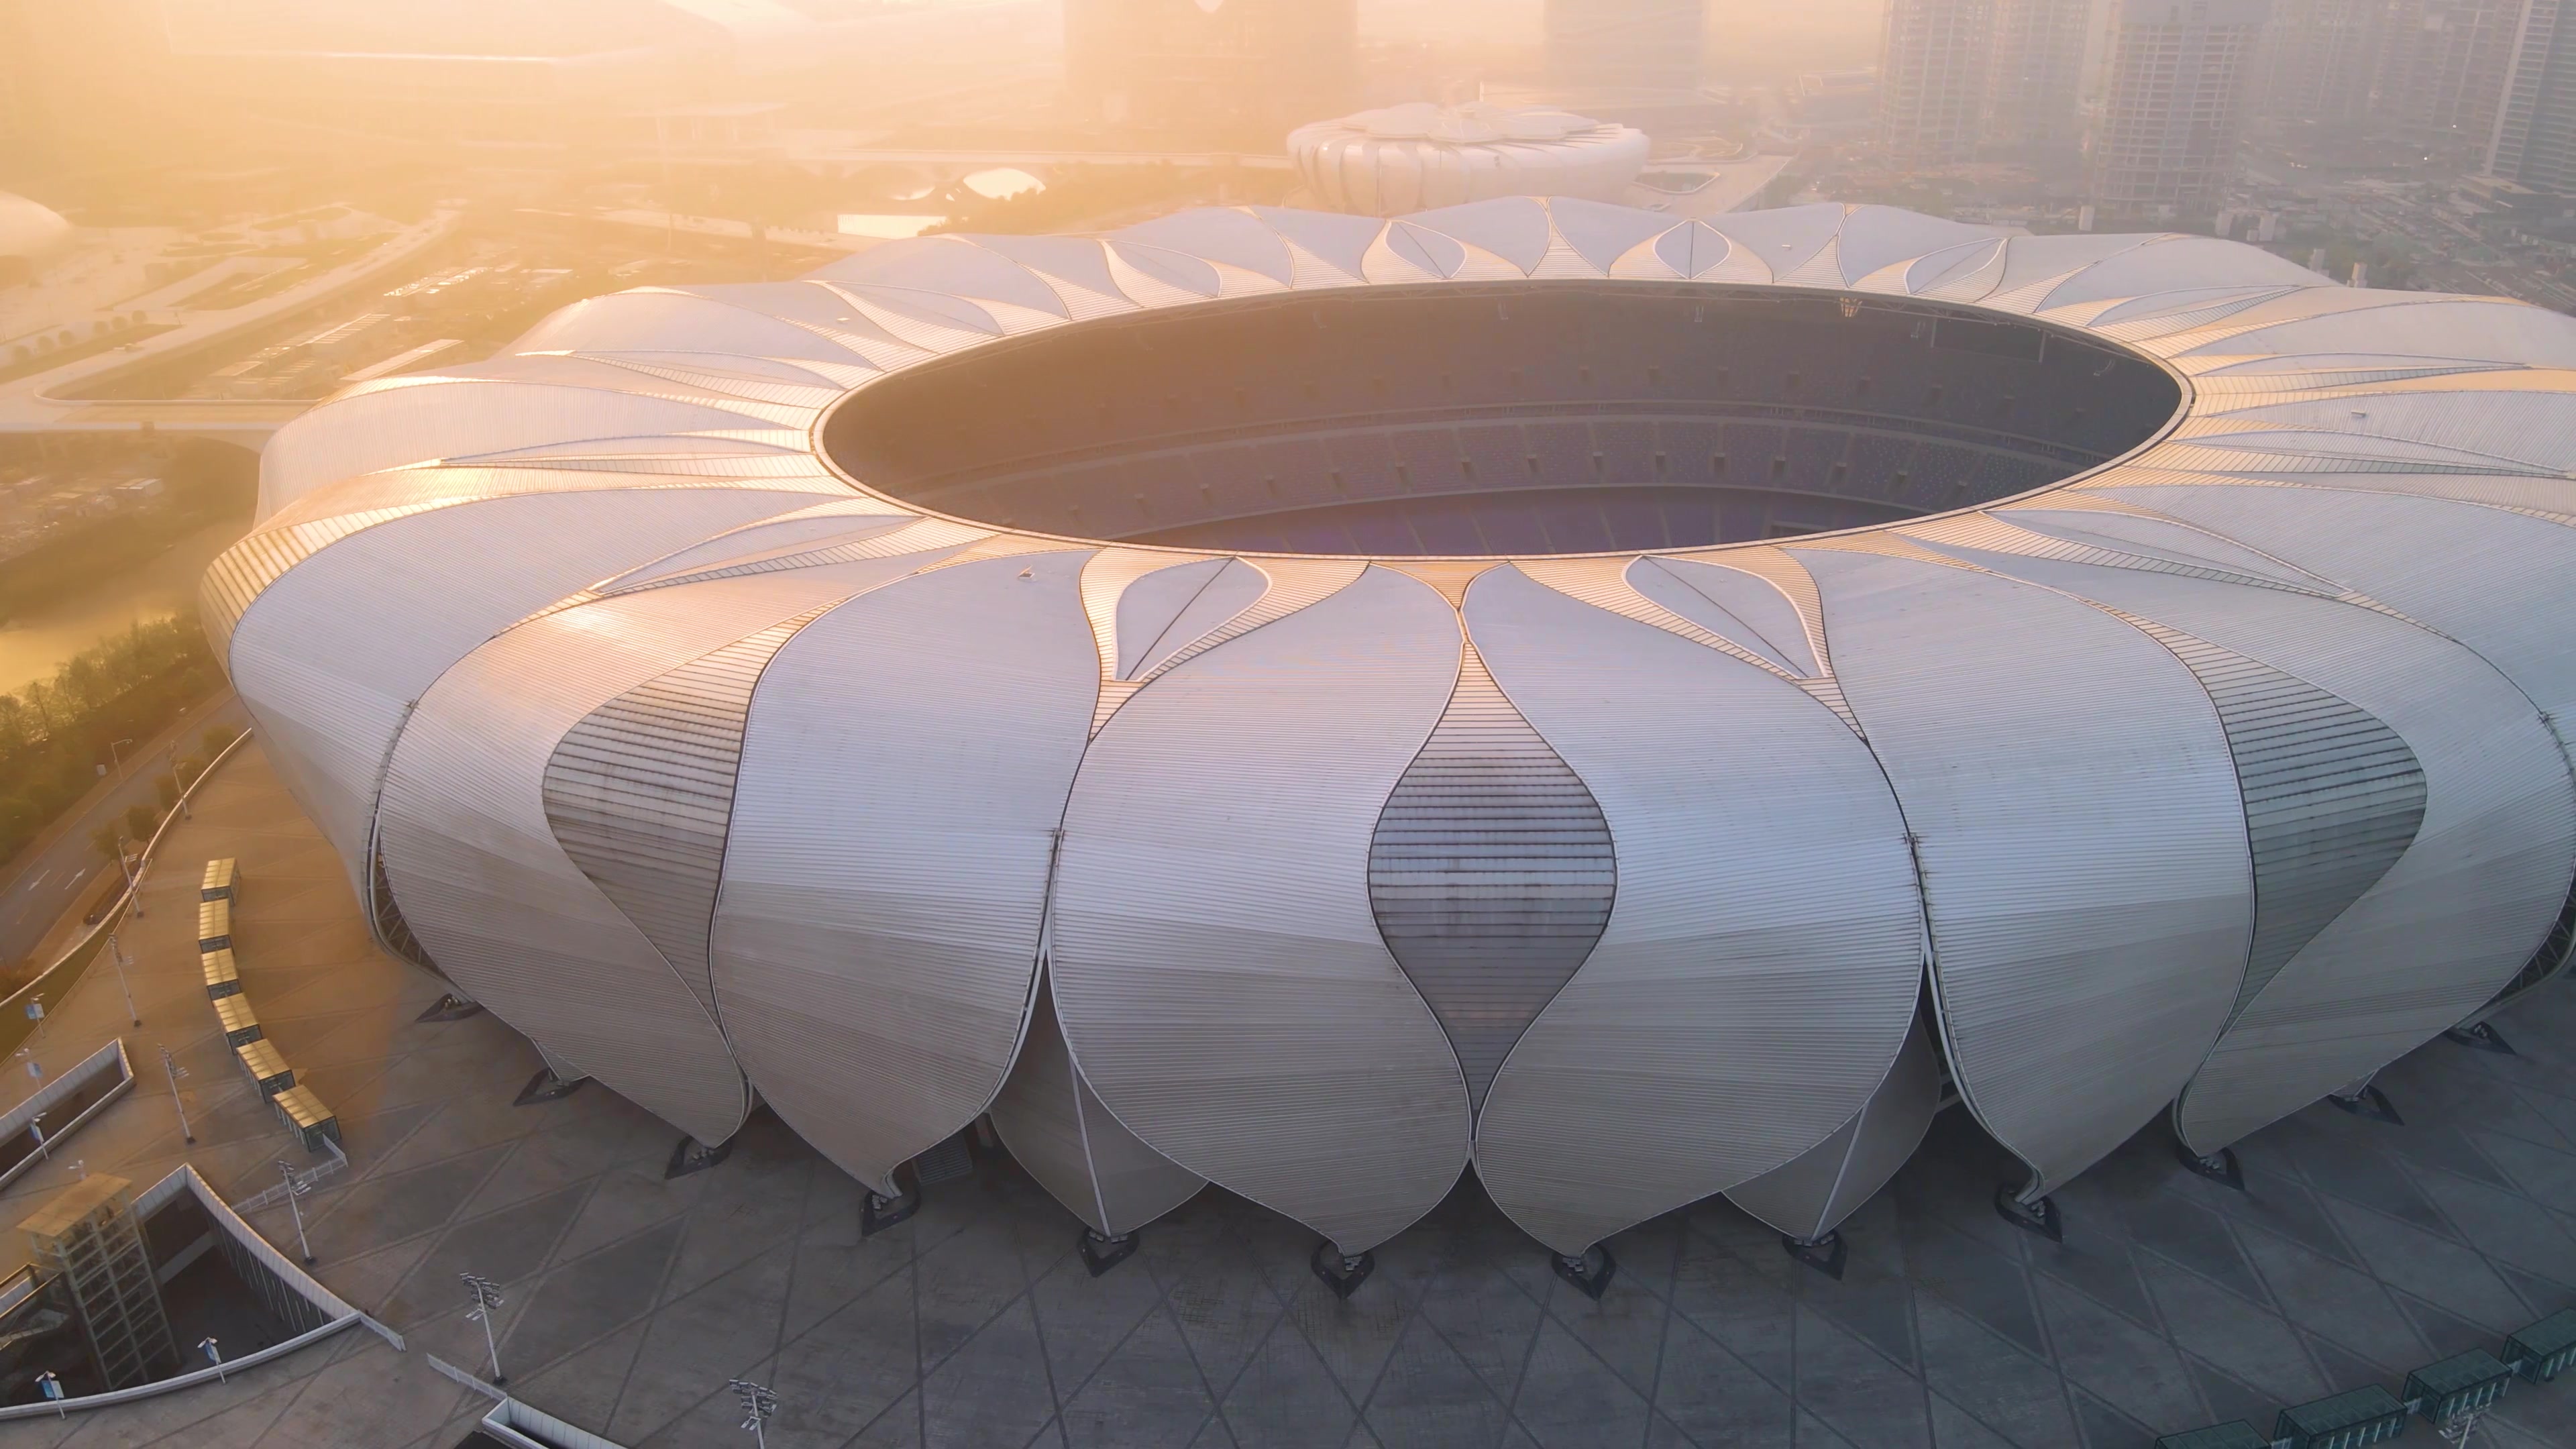 2022年亚运会场馆图片图片